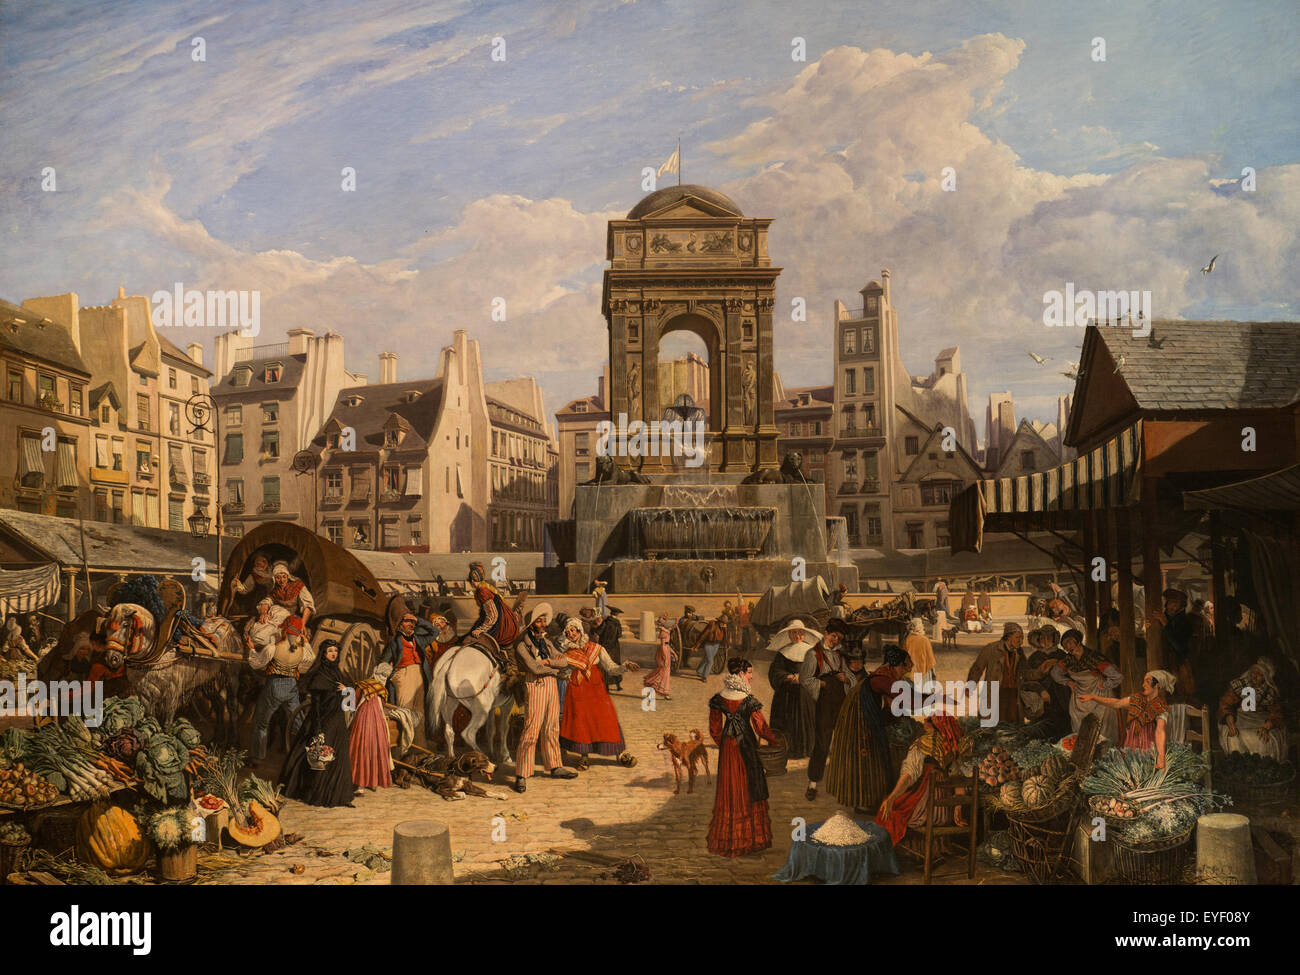 Der Markt und der Brunnen von unschuldigen 17.10.2013 - Sammlung des 19. Jahrhunderts Stockfoto